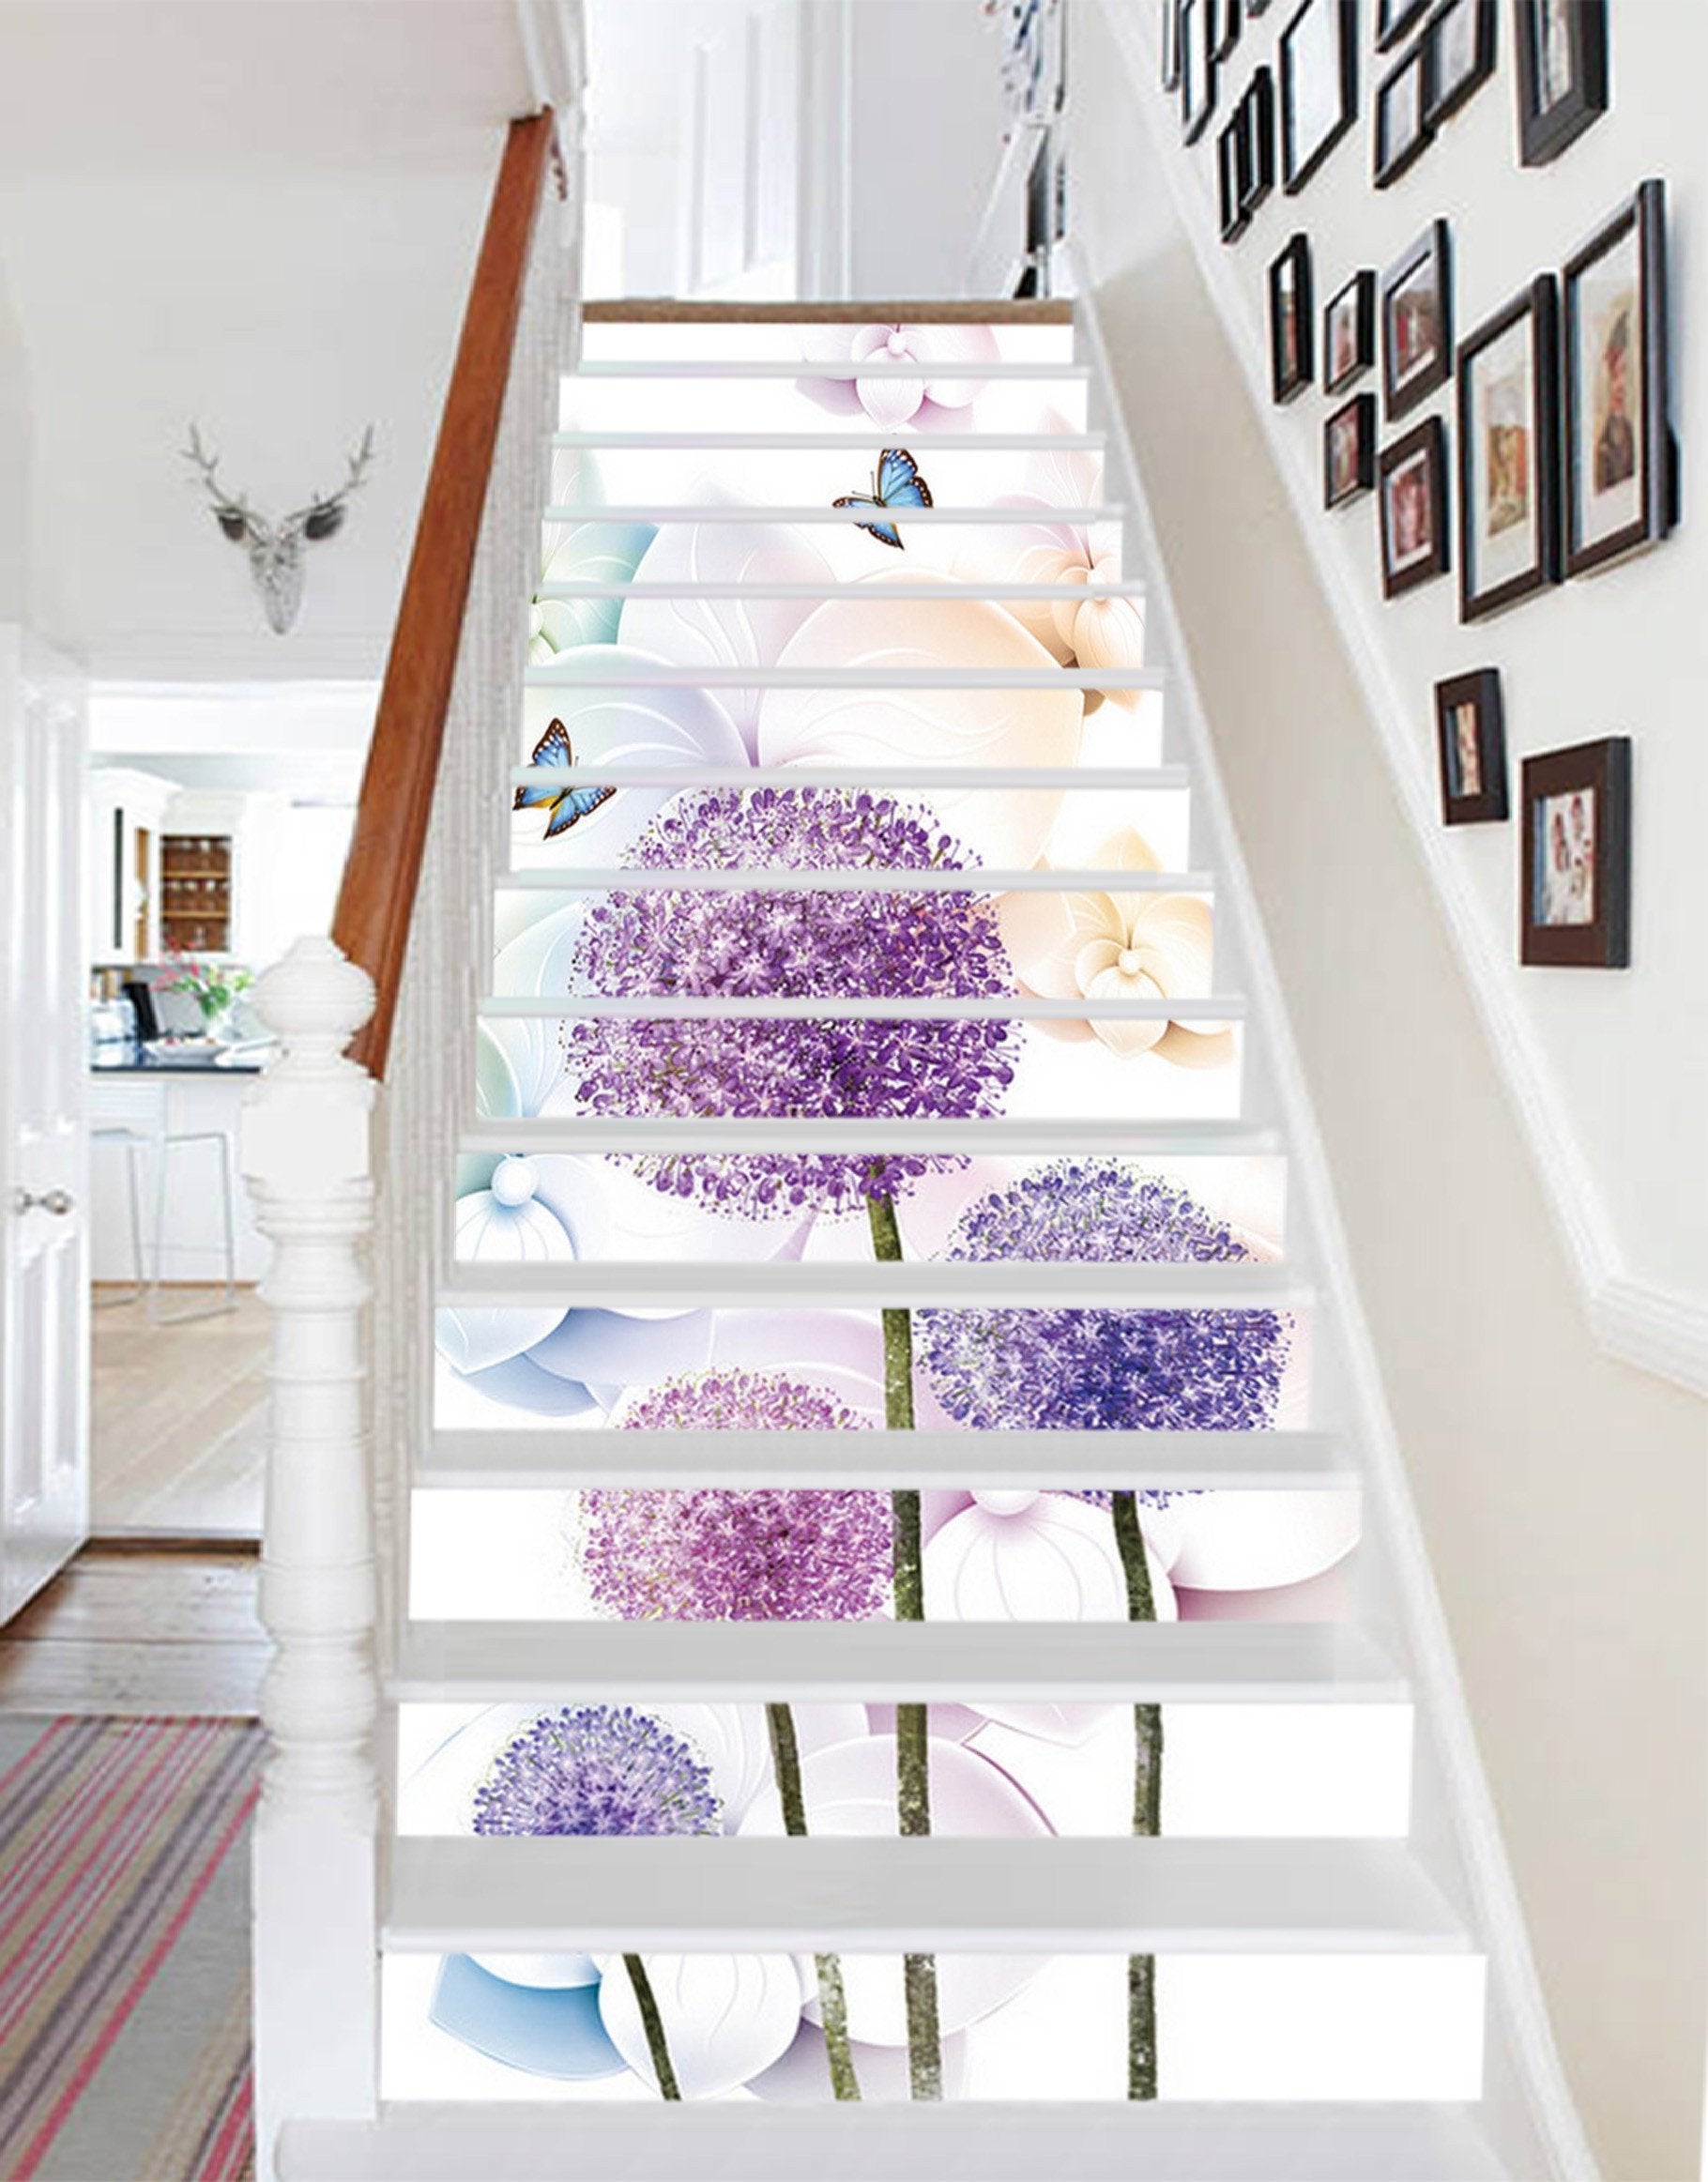 3D Flowers Butterflies 1539 Stair Risers Wallpaper AJ Wallpaper 